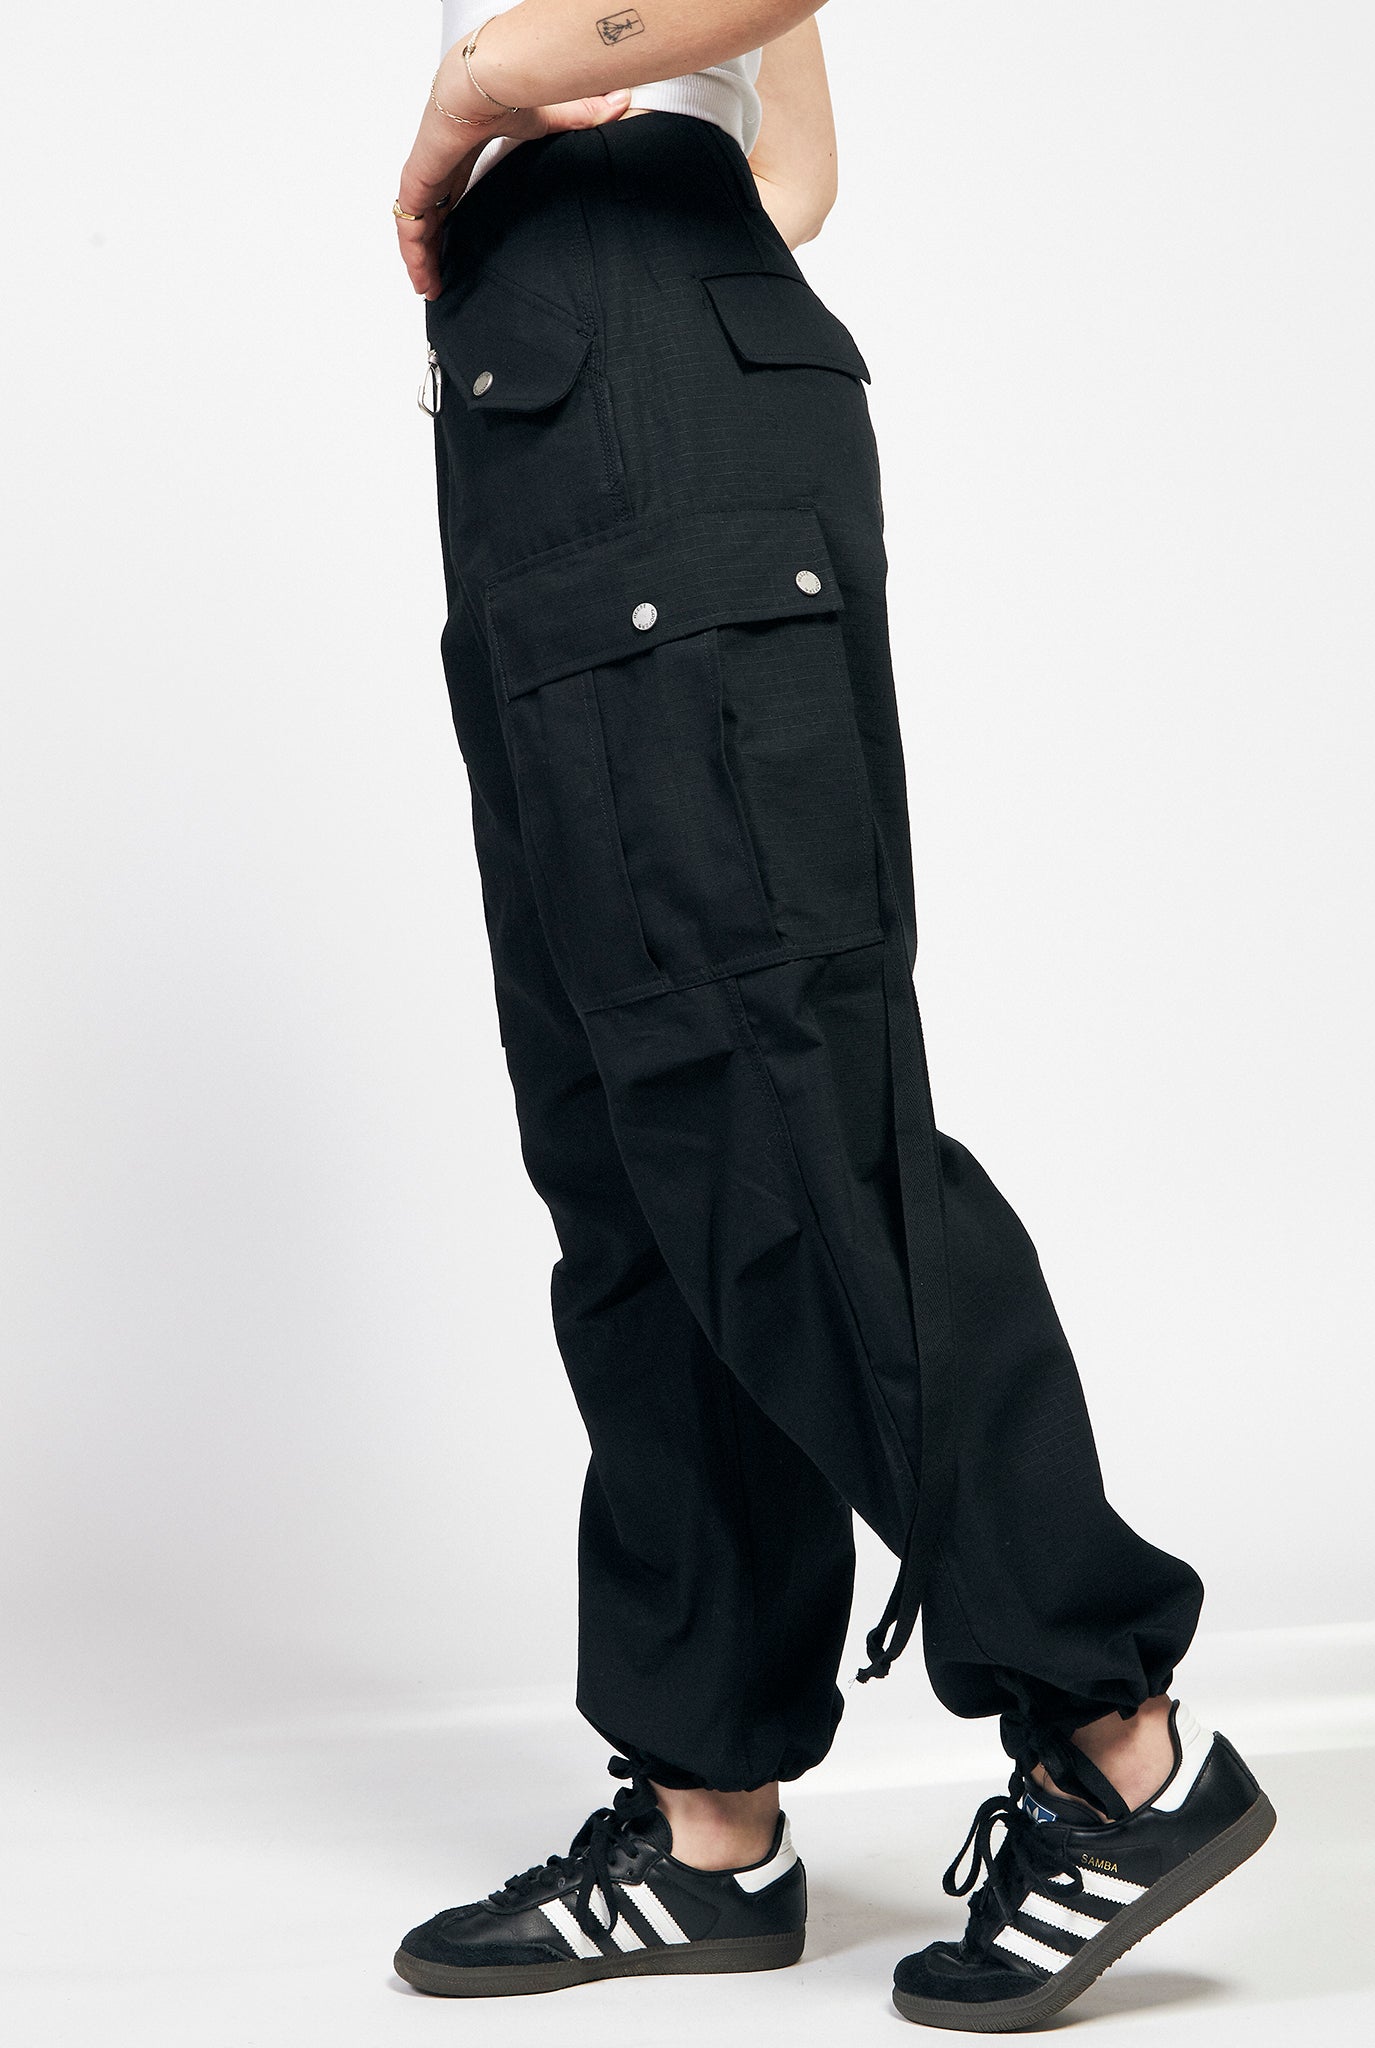 Ripstop Cargo Pant in Black – Gemini